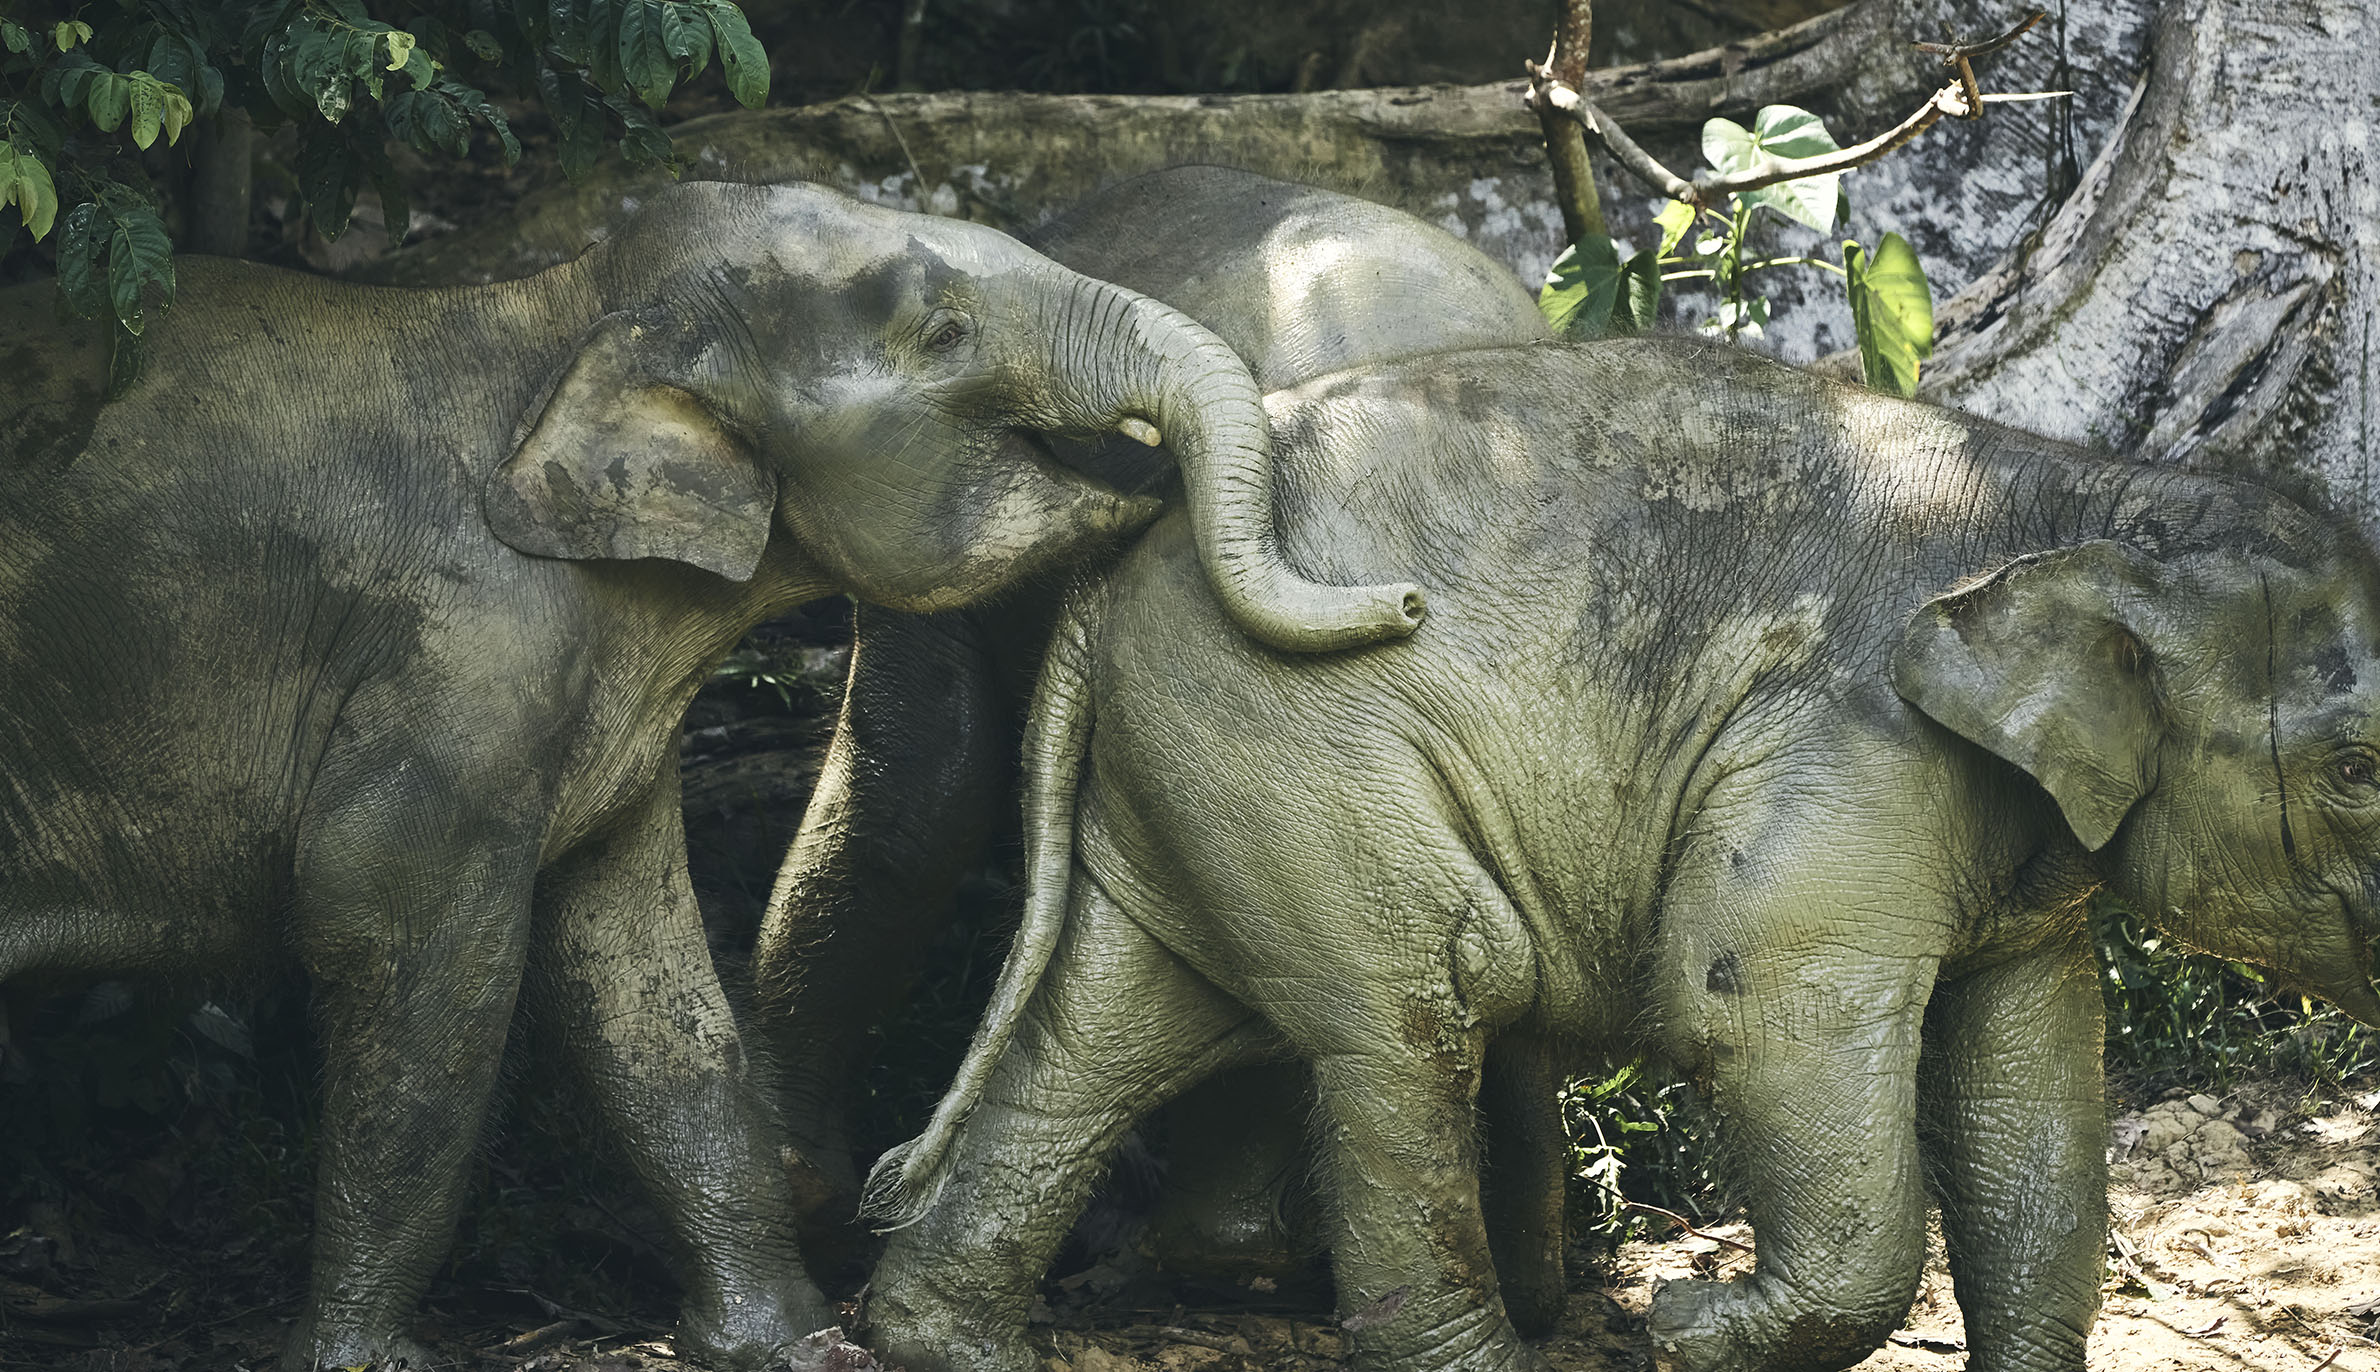 A herd of elephants photographed on Borneo Island.